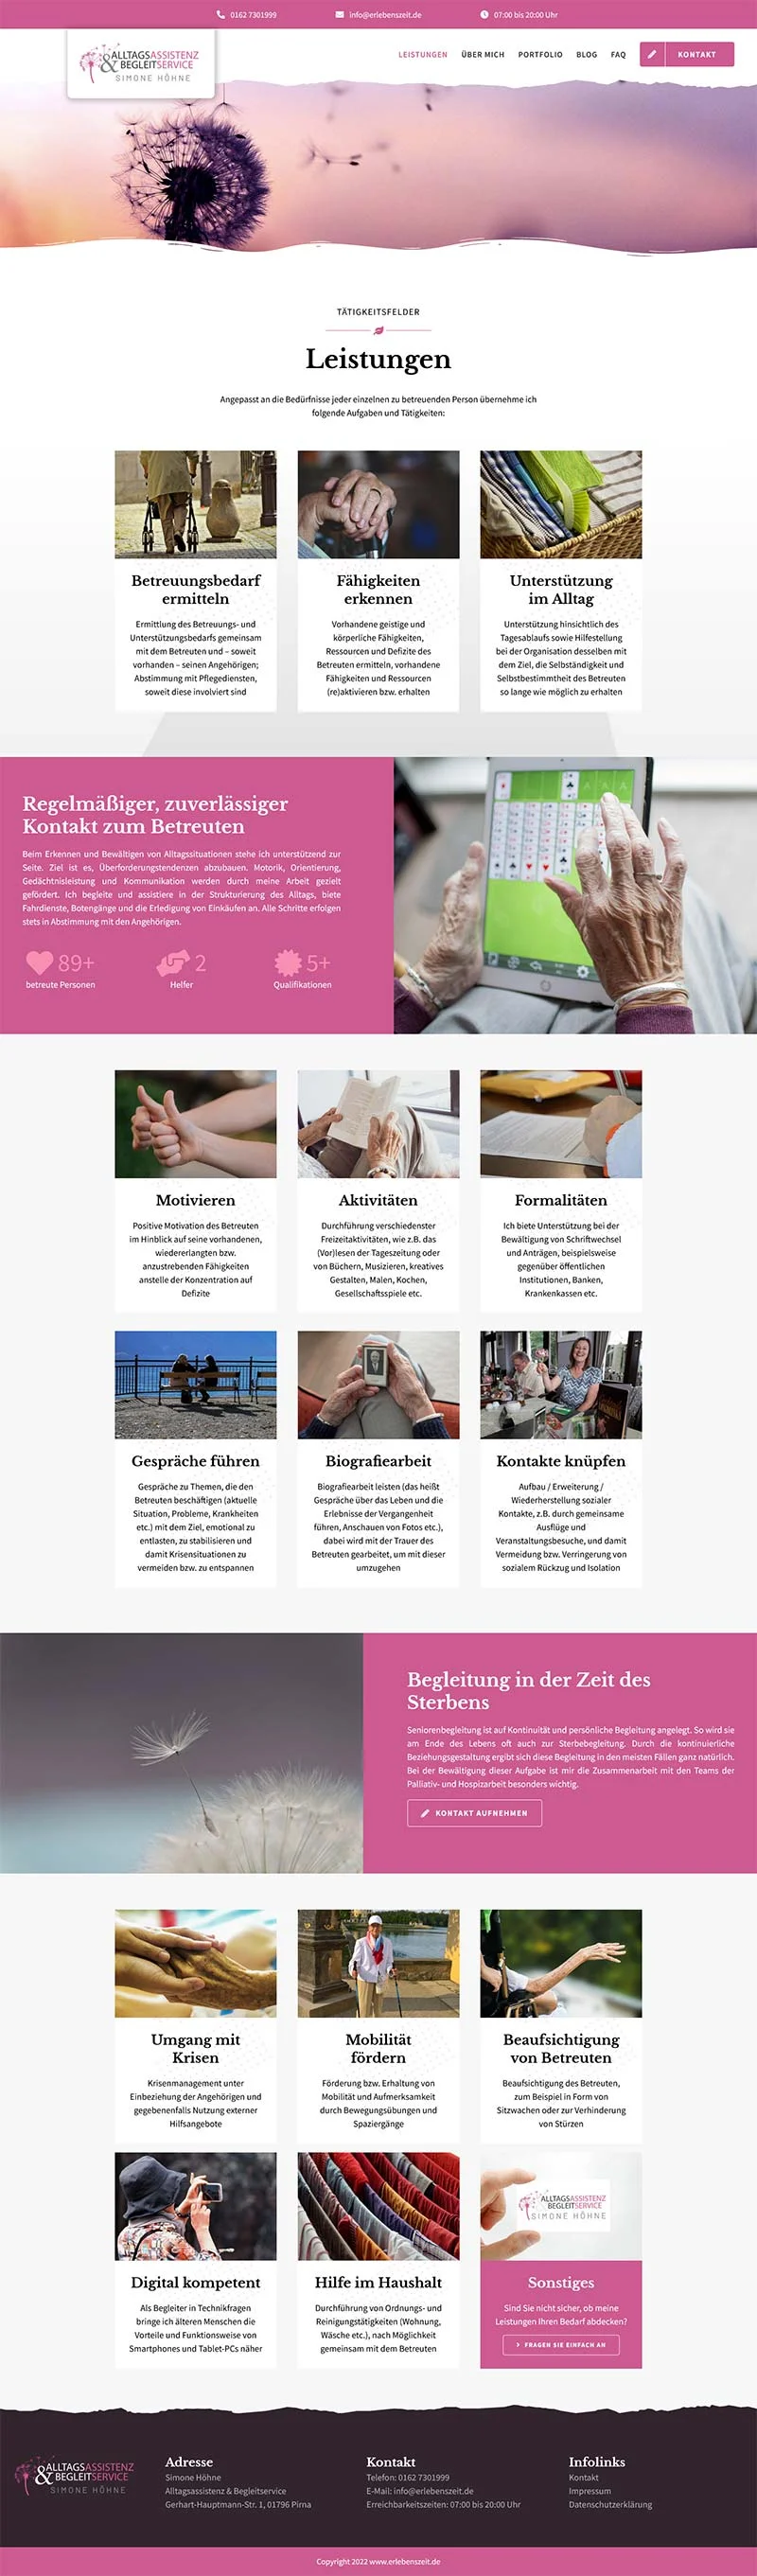 Alltagsassistenz & Begleitservice Simone Höhne - Screenshot Fullsize Unterseite